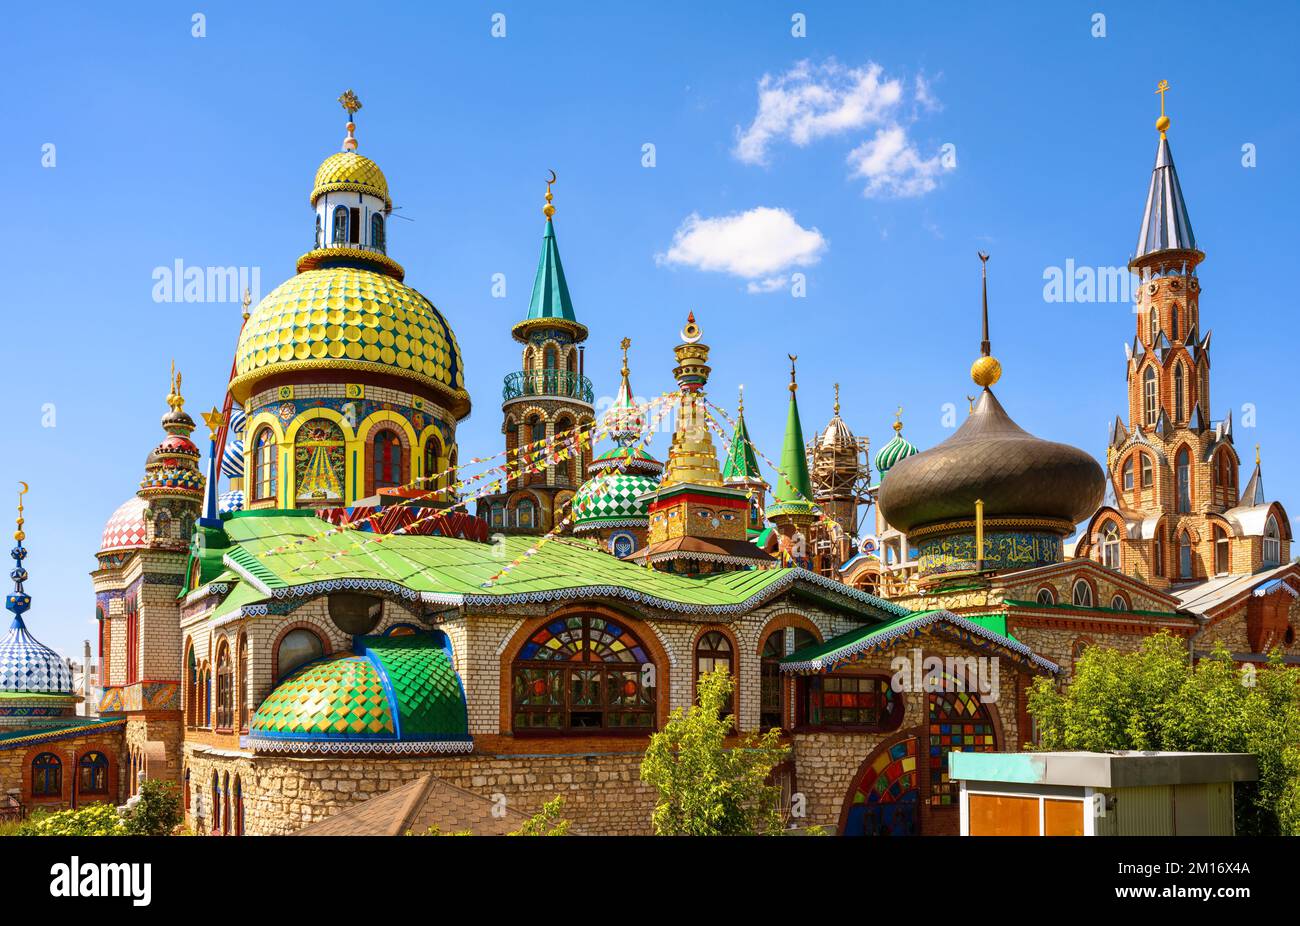 Alle Religionstempel in Kasan, Tatarstan, Russland. Es ist ein Wahrzeichen von Kasan. Panorama der wunderschönen bunten Anlage mit Kirchen, Moscheen und anderen Orten Stockfoto